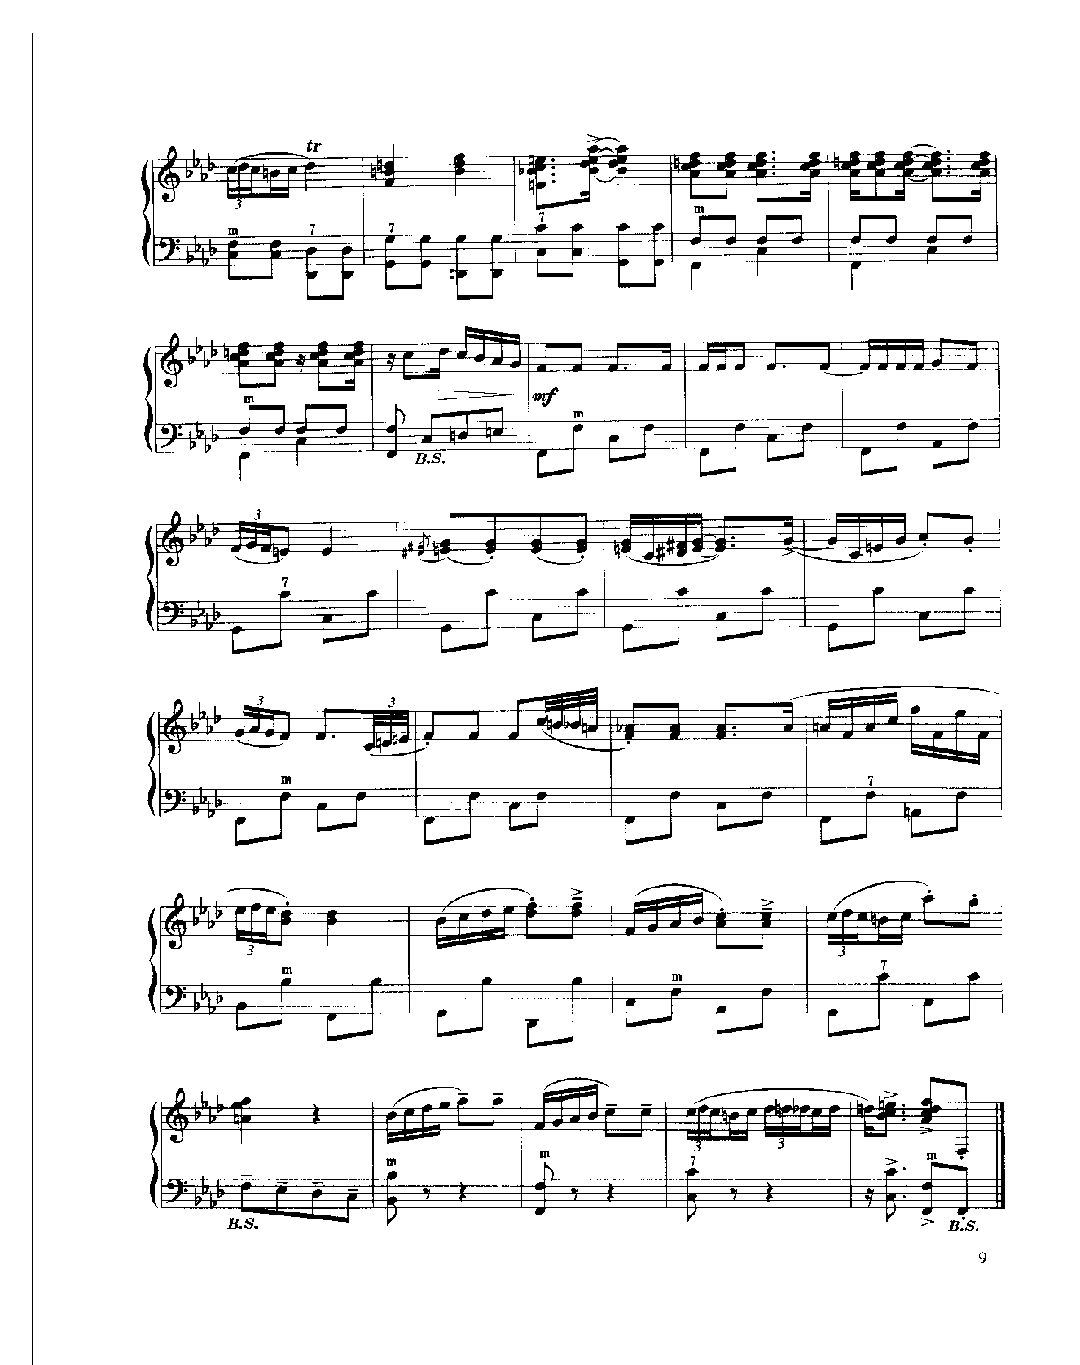 现代手风琴流行乐曲《波尔卡》[俄]符拉基米尔·乌沙阔夫曲